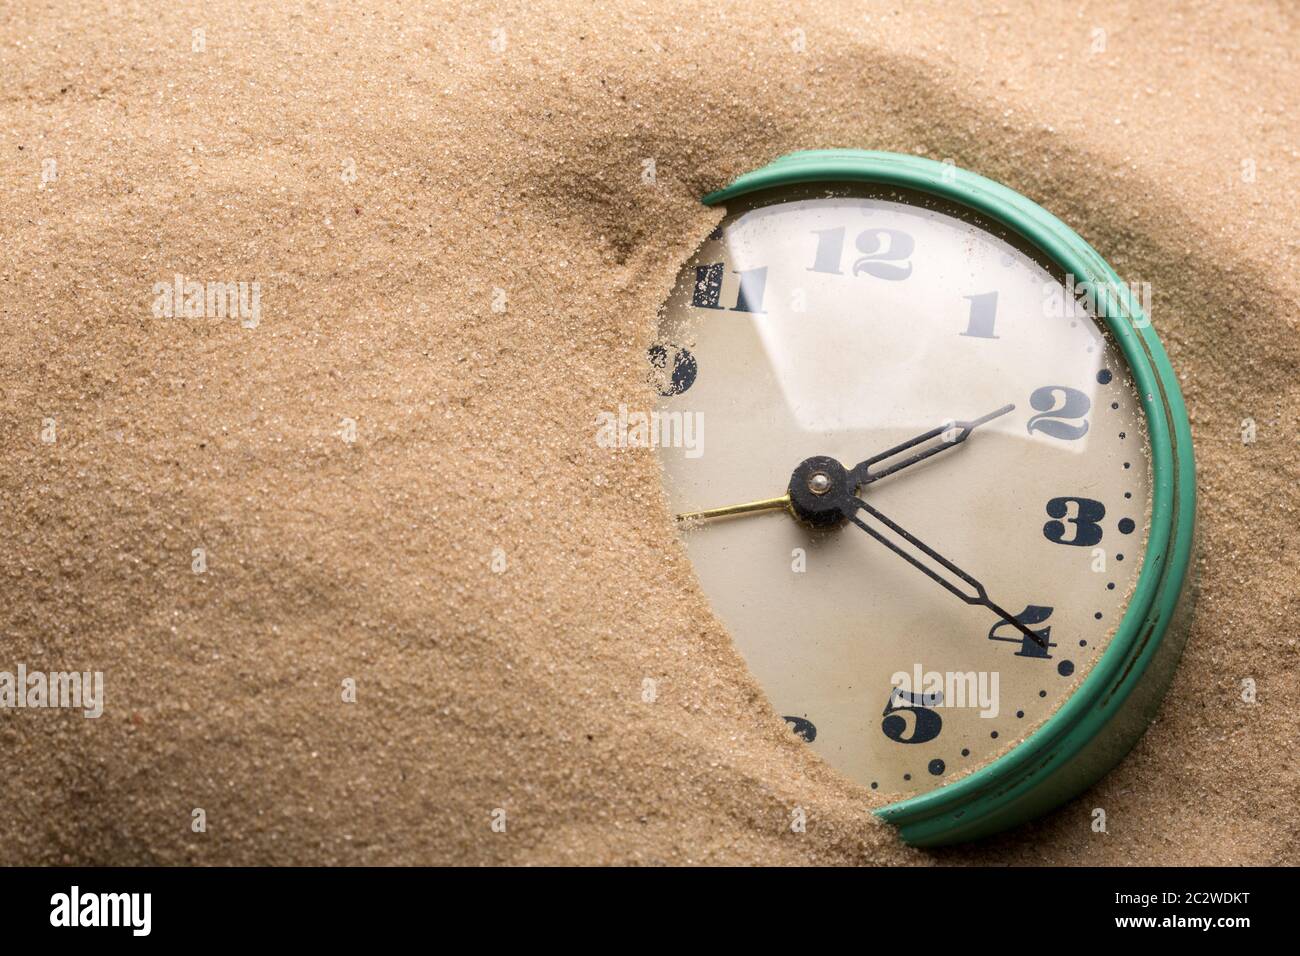 Old alarm clock in sand Stock Photo